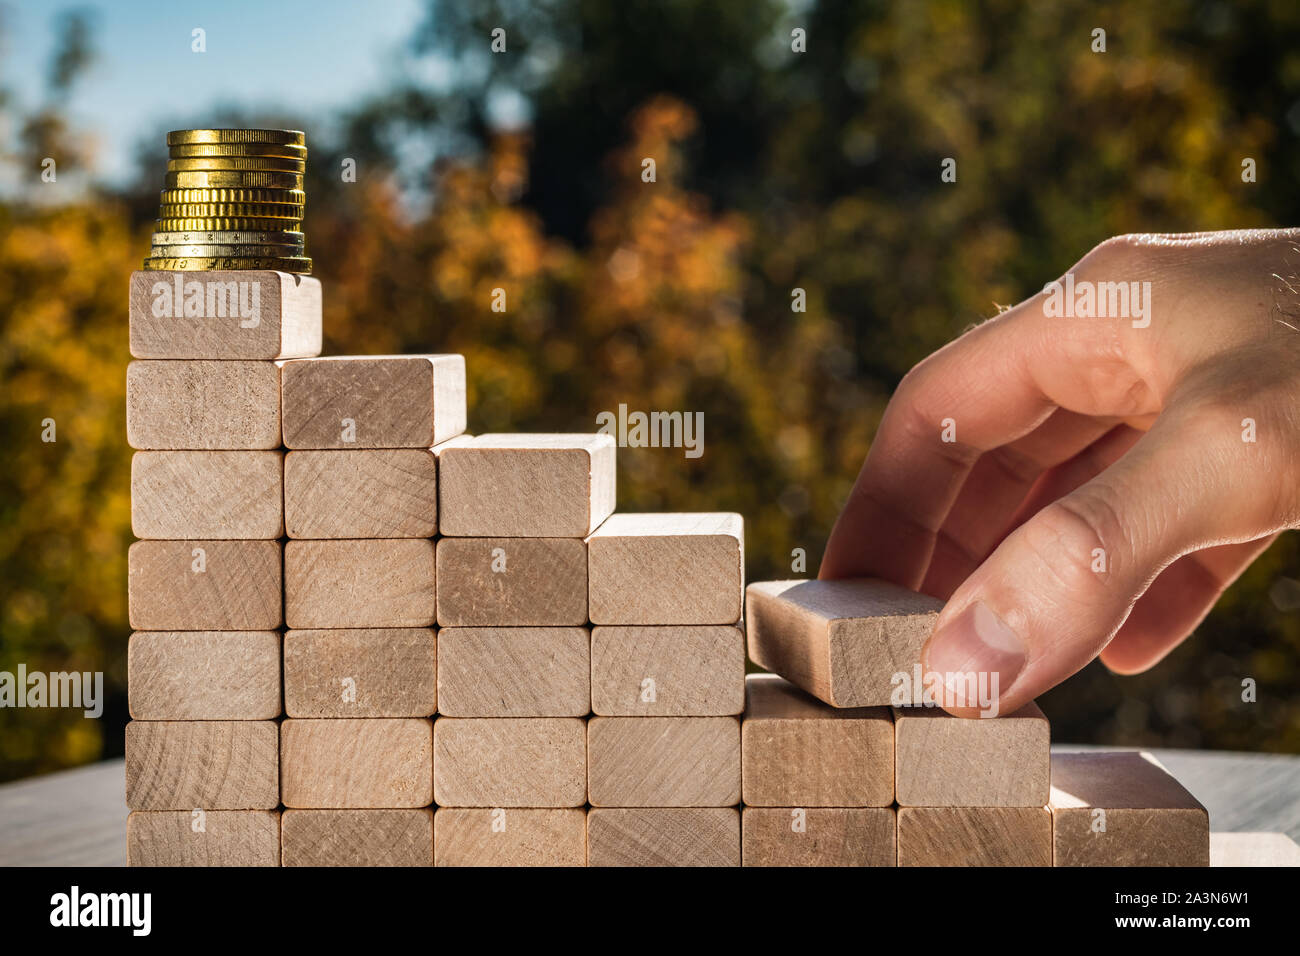 Konzept der Wirtschaftsförderung Ziele. Männliche Finger bauen Treppen aus Holz- Bausteine, die zu den Top. Blurry Herbst Hintergrund an einem sonnigen Tag. Stockfoto